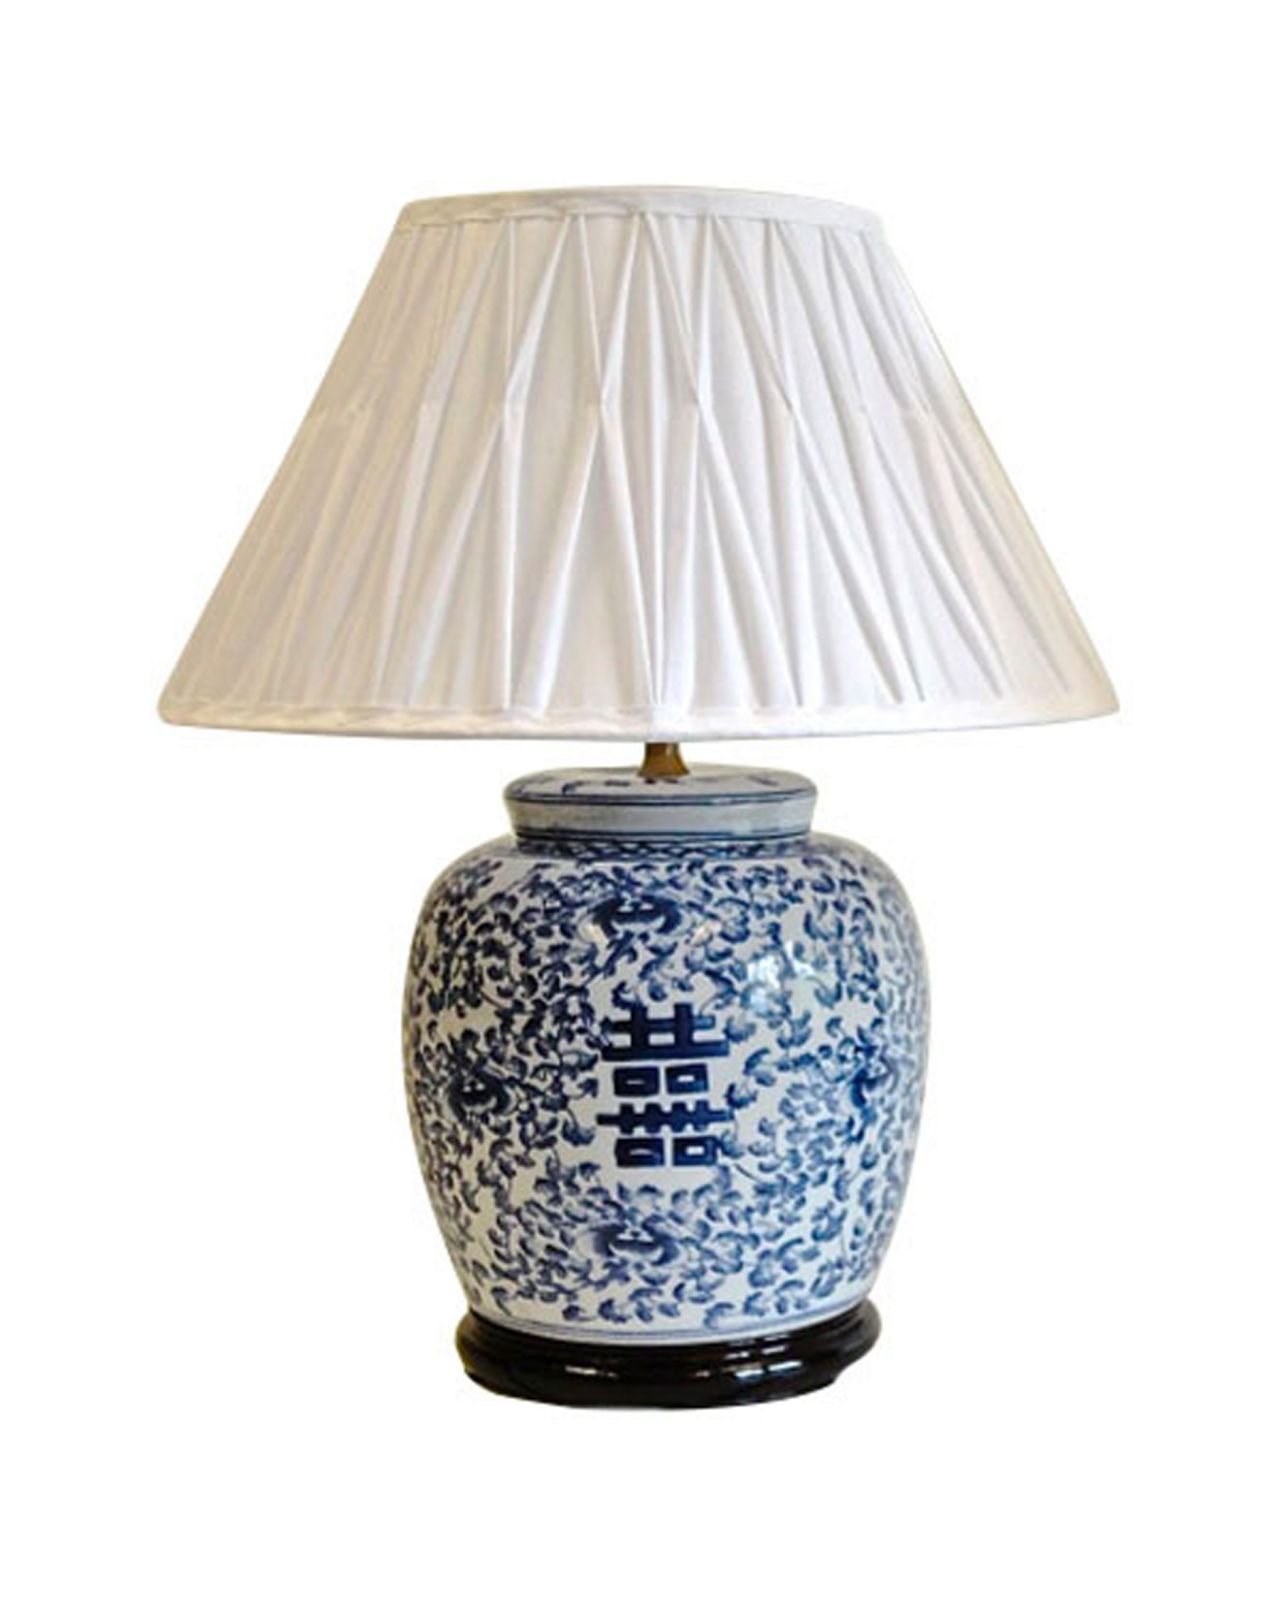 Kina bordslampa blå/vit